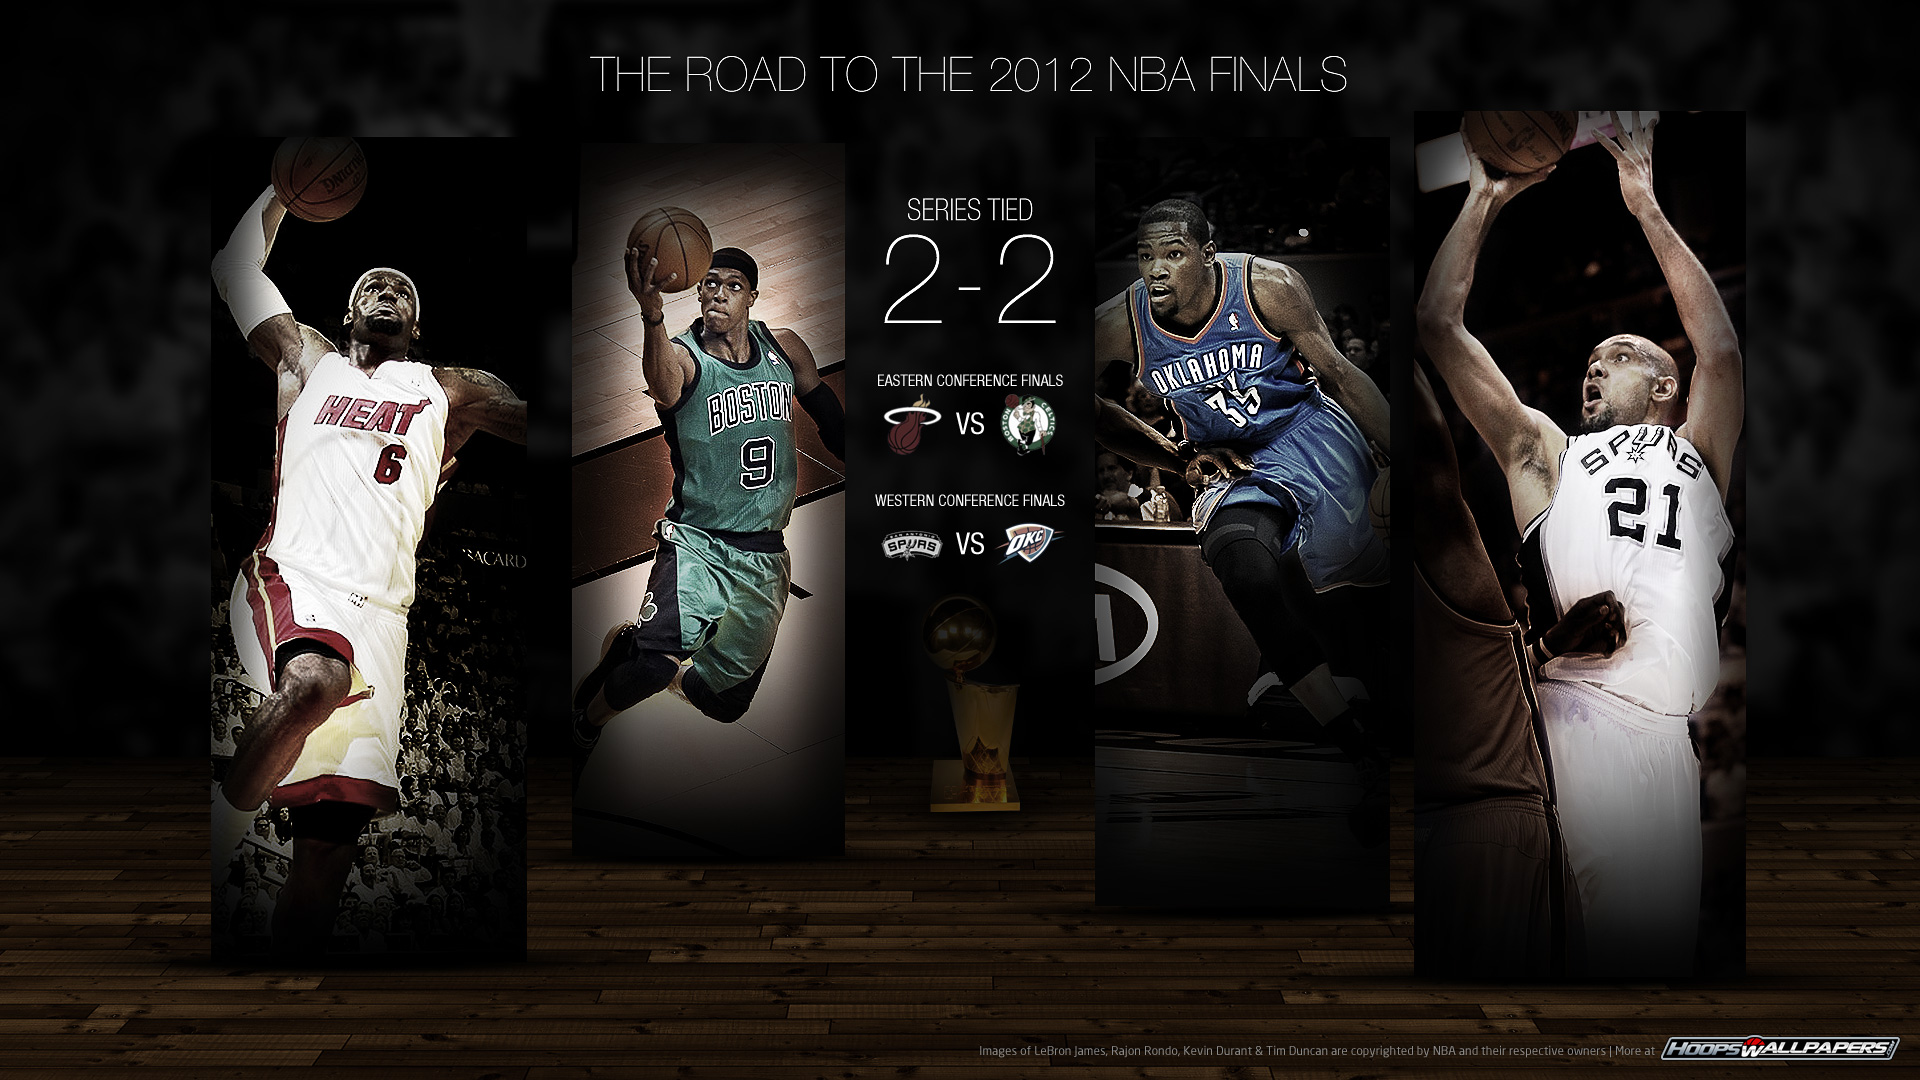 NBA Wallpapers HD | PixelsTalk.Net